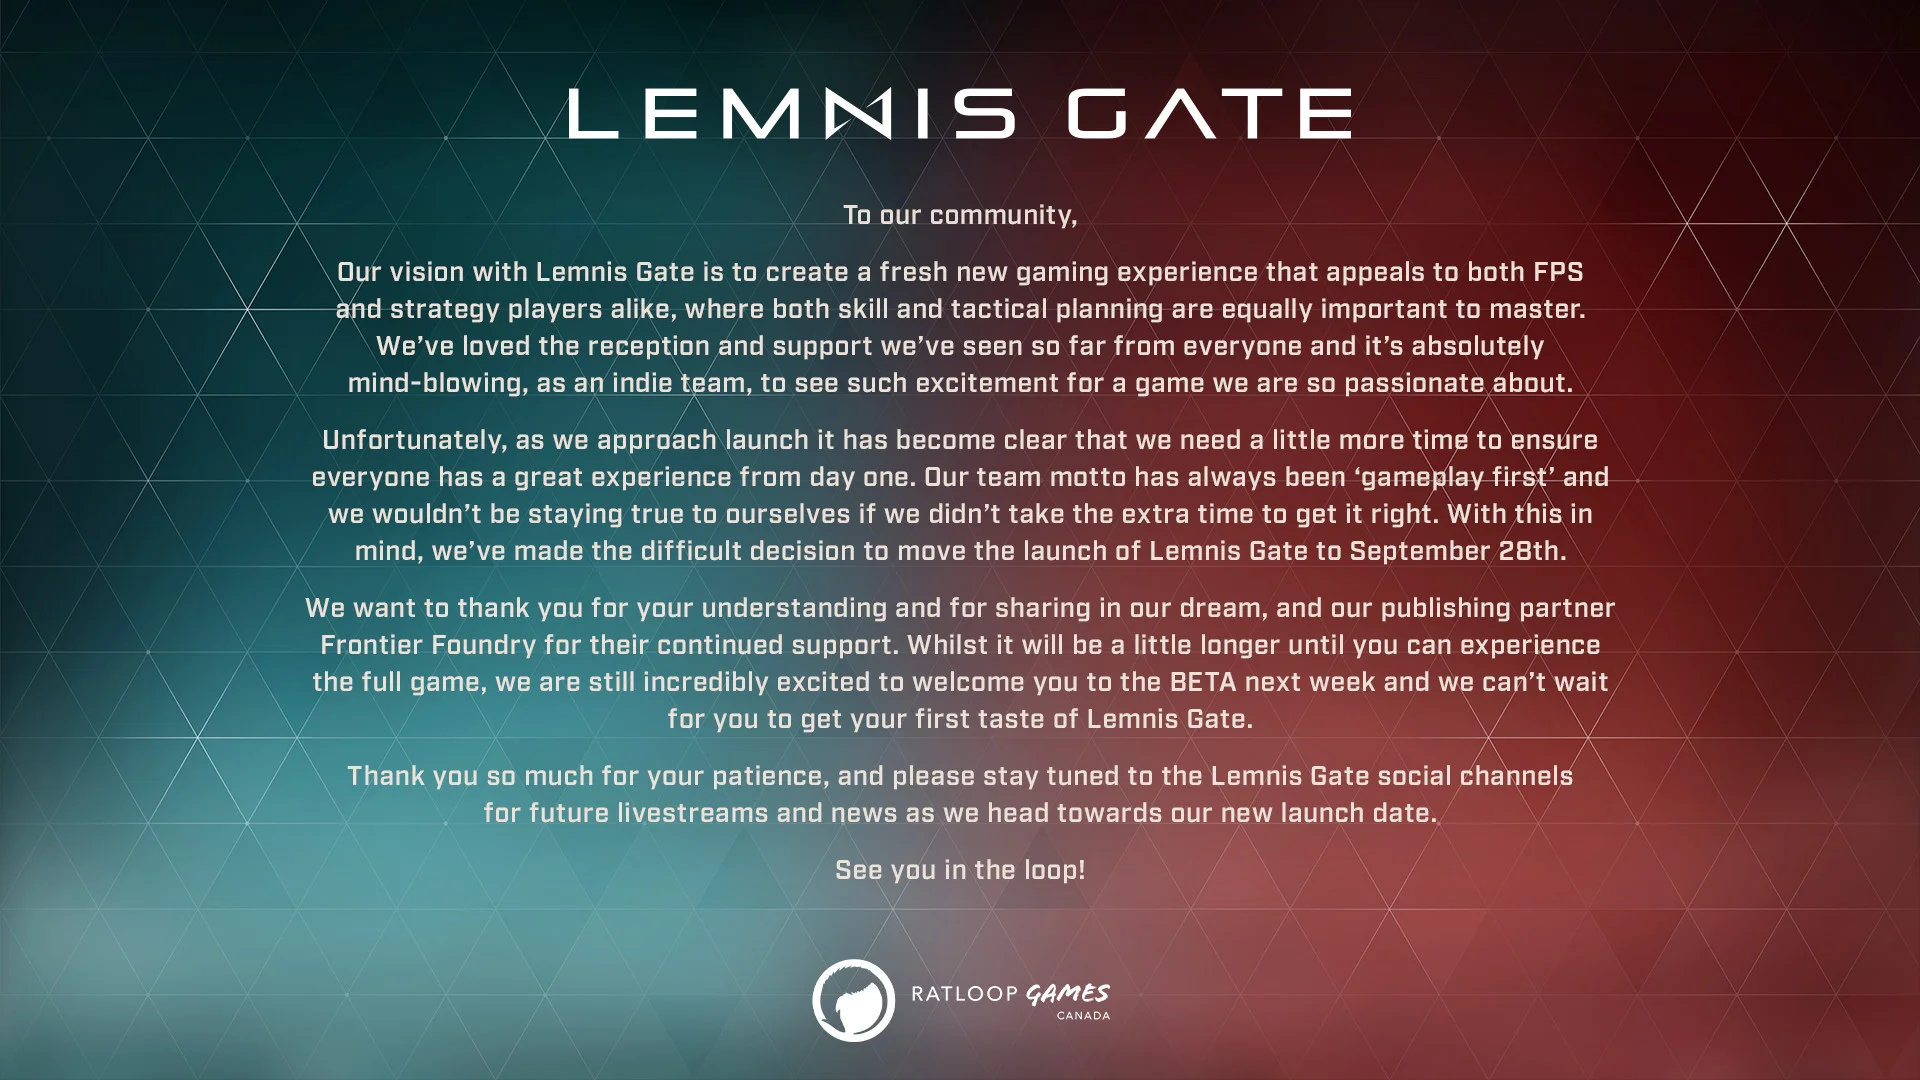 Релиз Lemnis Gate отложили до конца сентября - фото 1